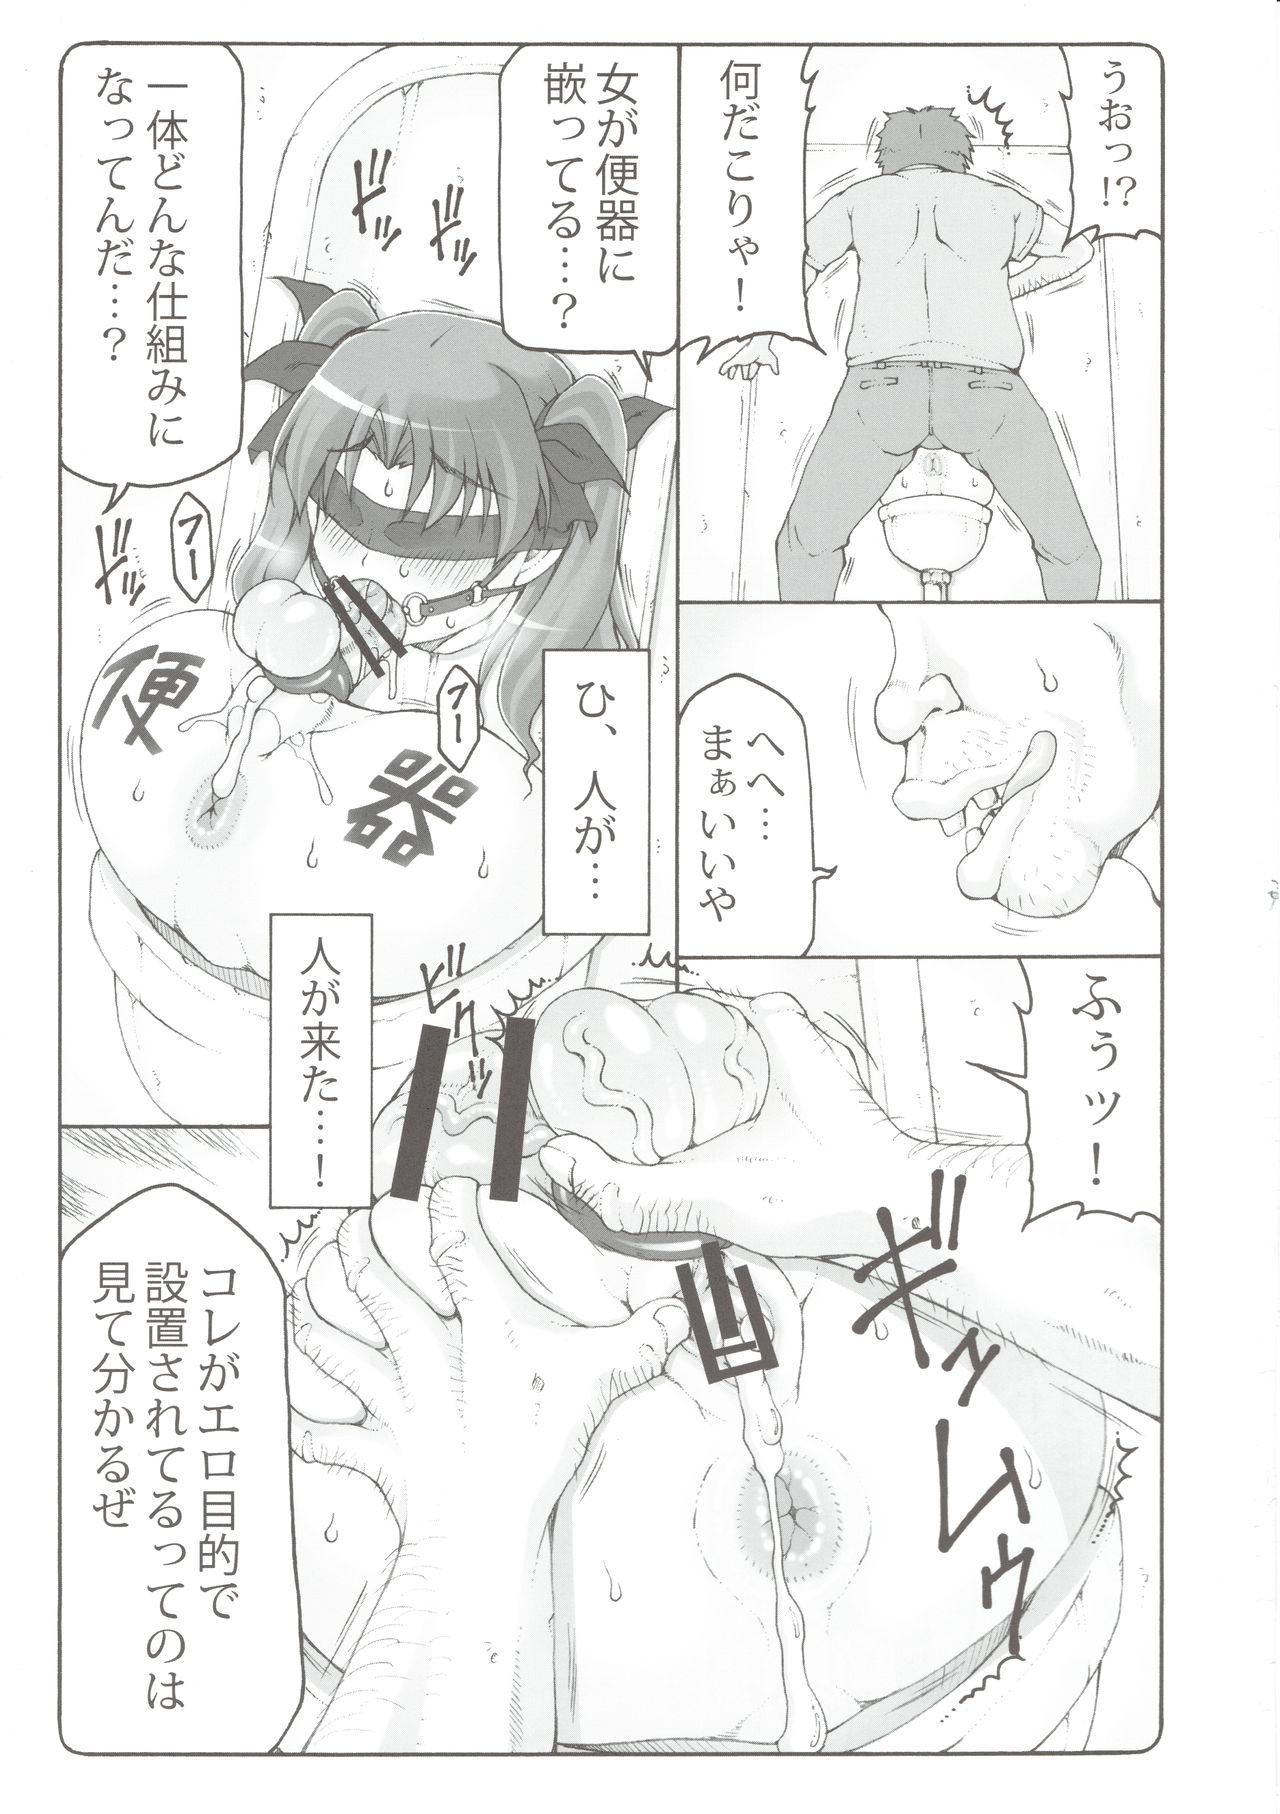 Ball Sucking Kotori 16 - Fate stay night Skirt - Page 6